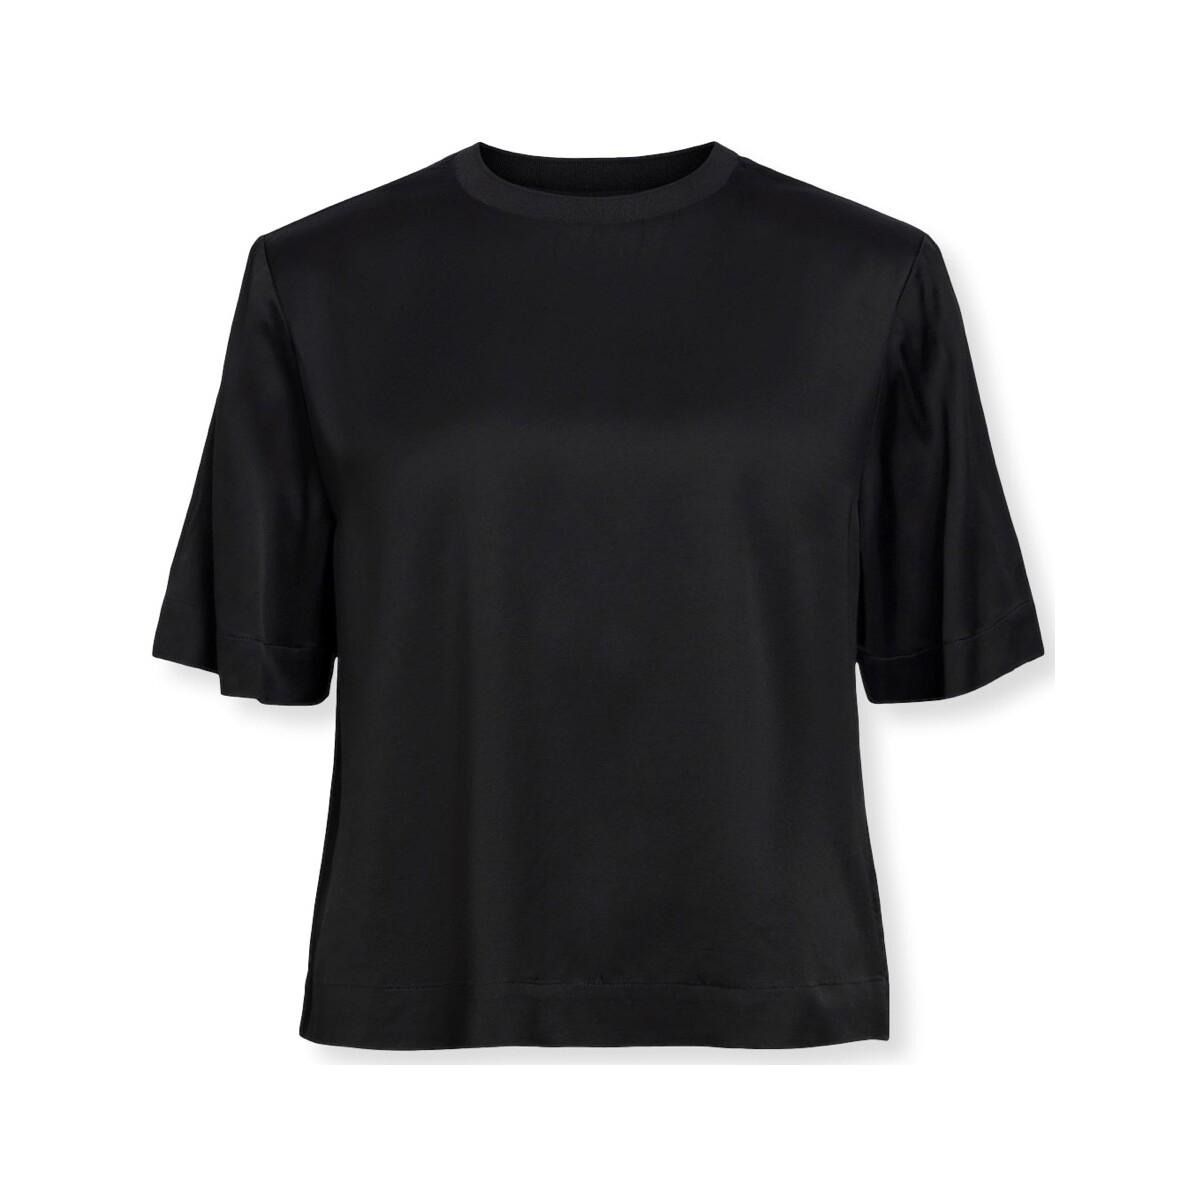 Kleidung Damen Sweatshirts Object Top Eirot S/S - Black Schwarz